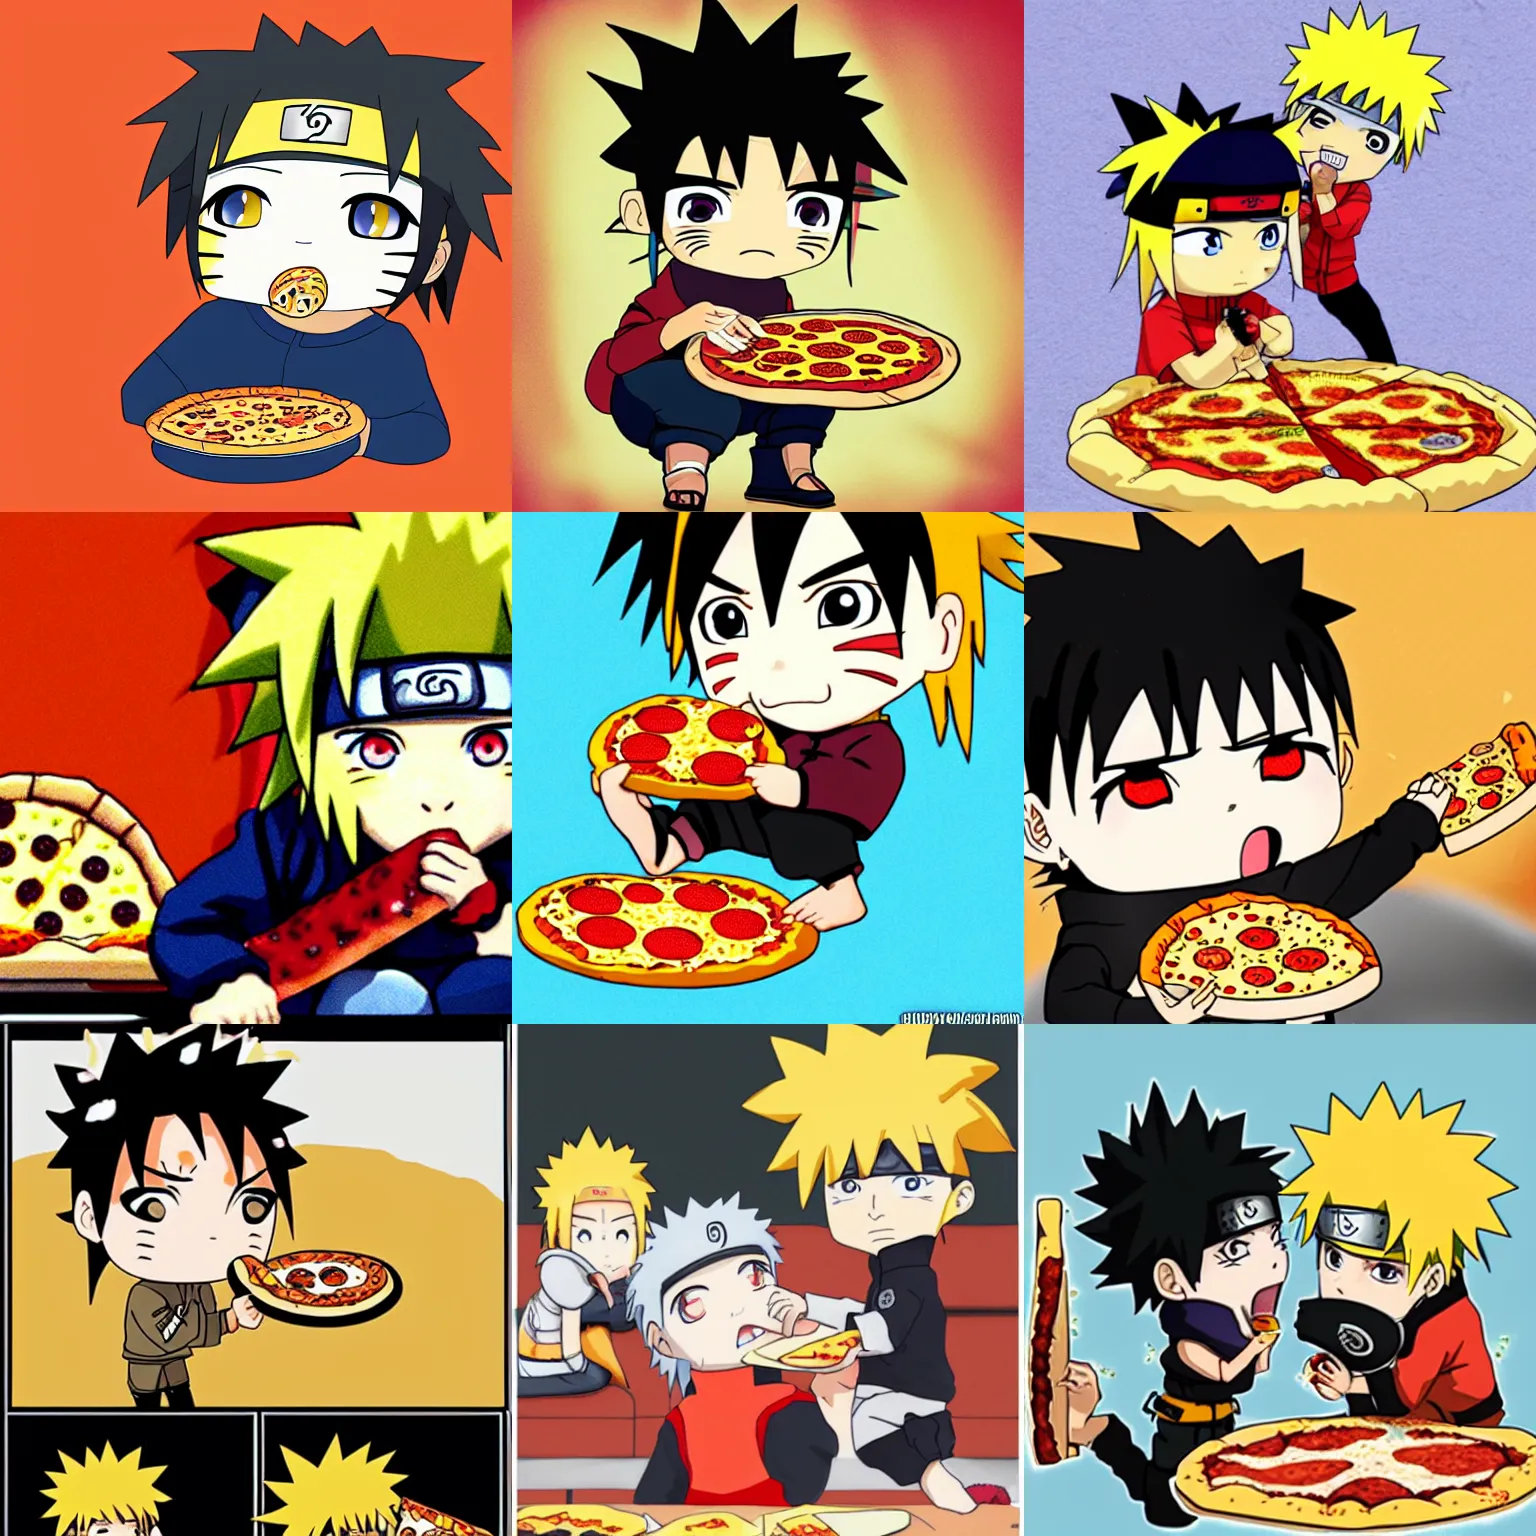 Prompt: Chibi Naruto biting into a pizza